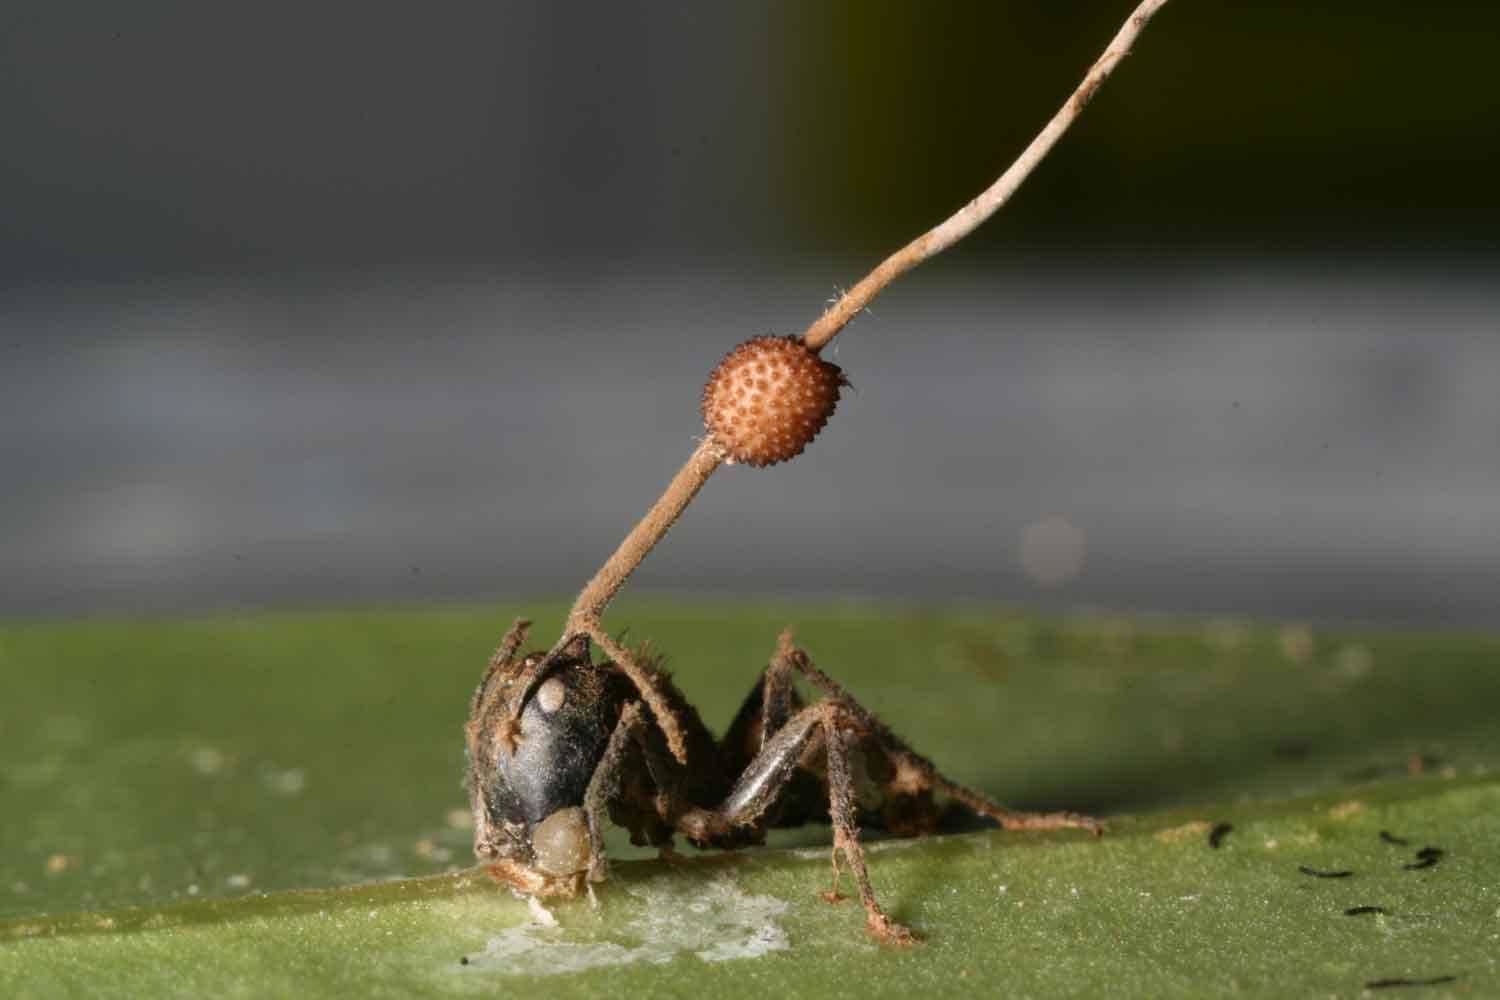 तो ये ज़ोंबी फंगस चींटियों को धोखा देकर बनाता है अपना शिकार